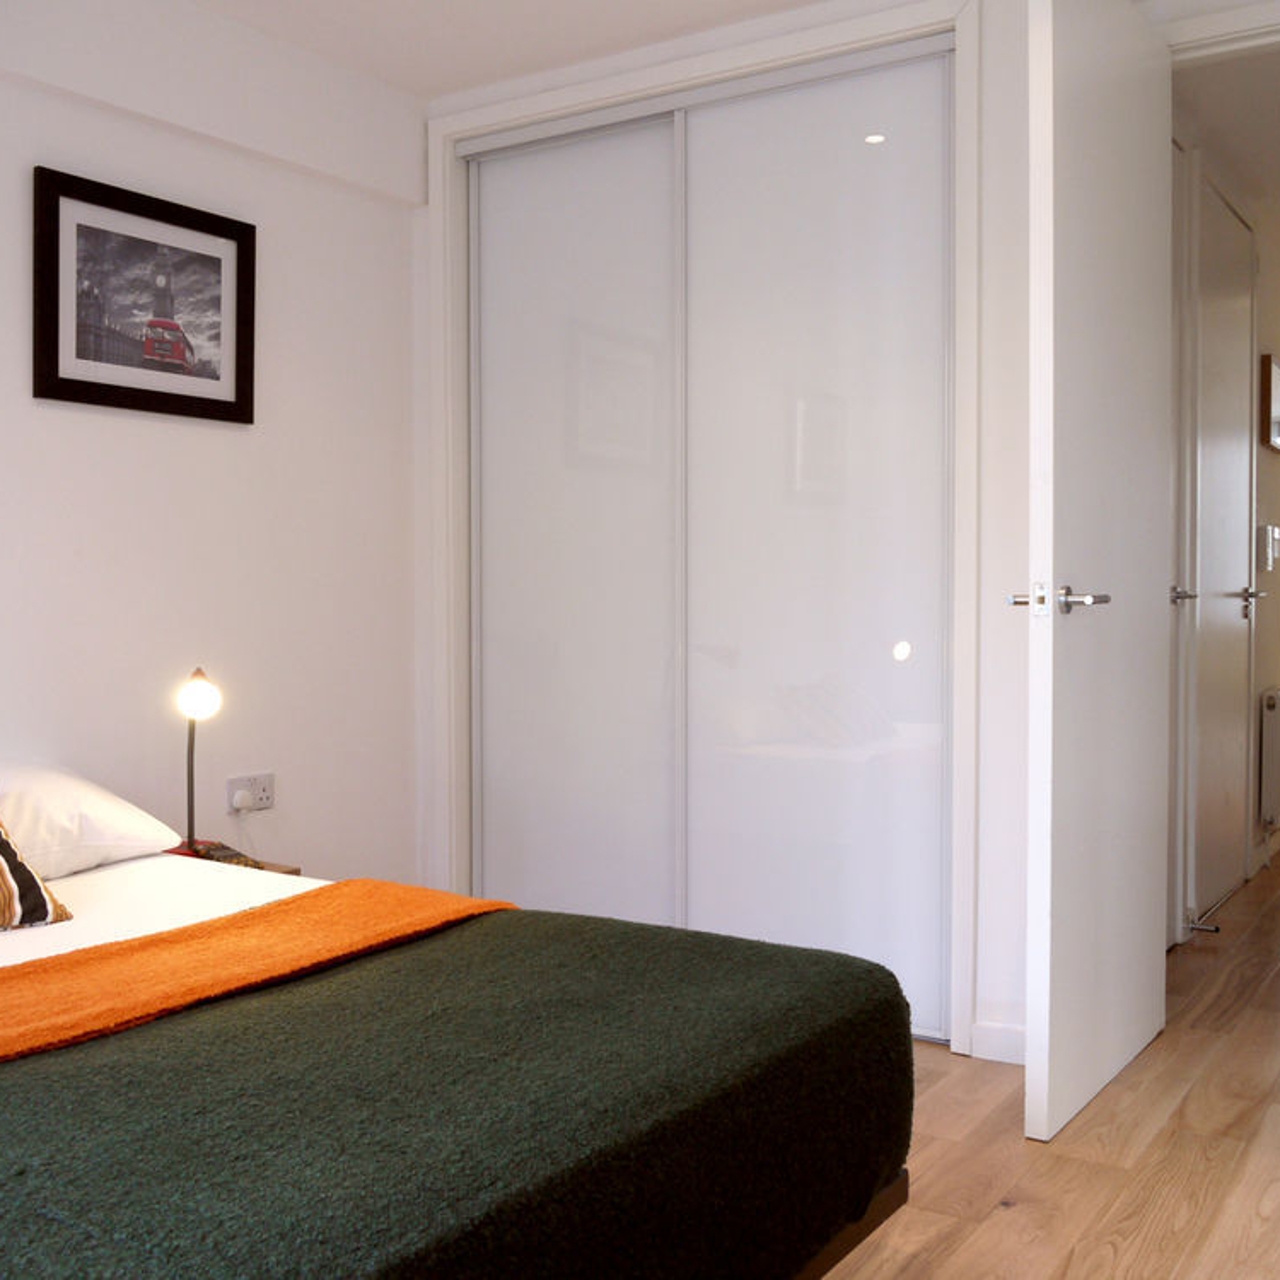 Apropiado ranura guirnalda Hotel Ridos Níké Apartments en Islington, London en HRS con servicios  gratuitos